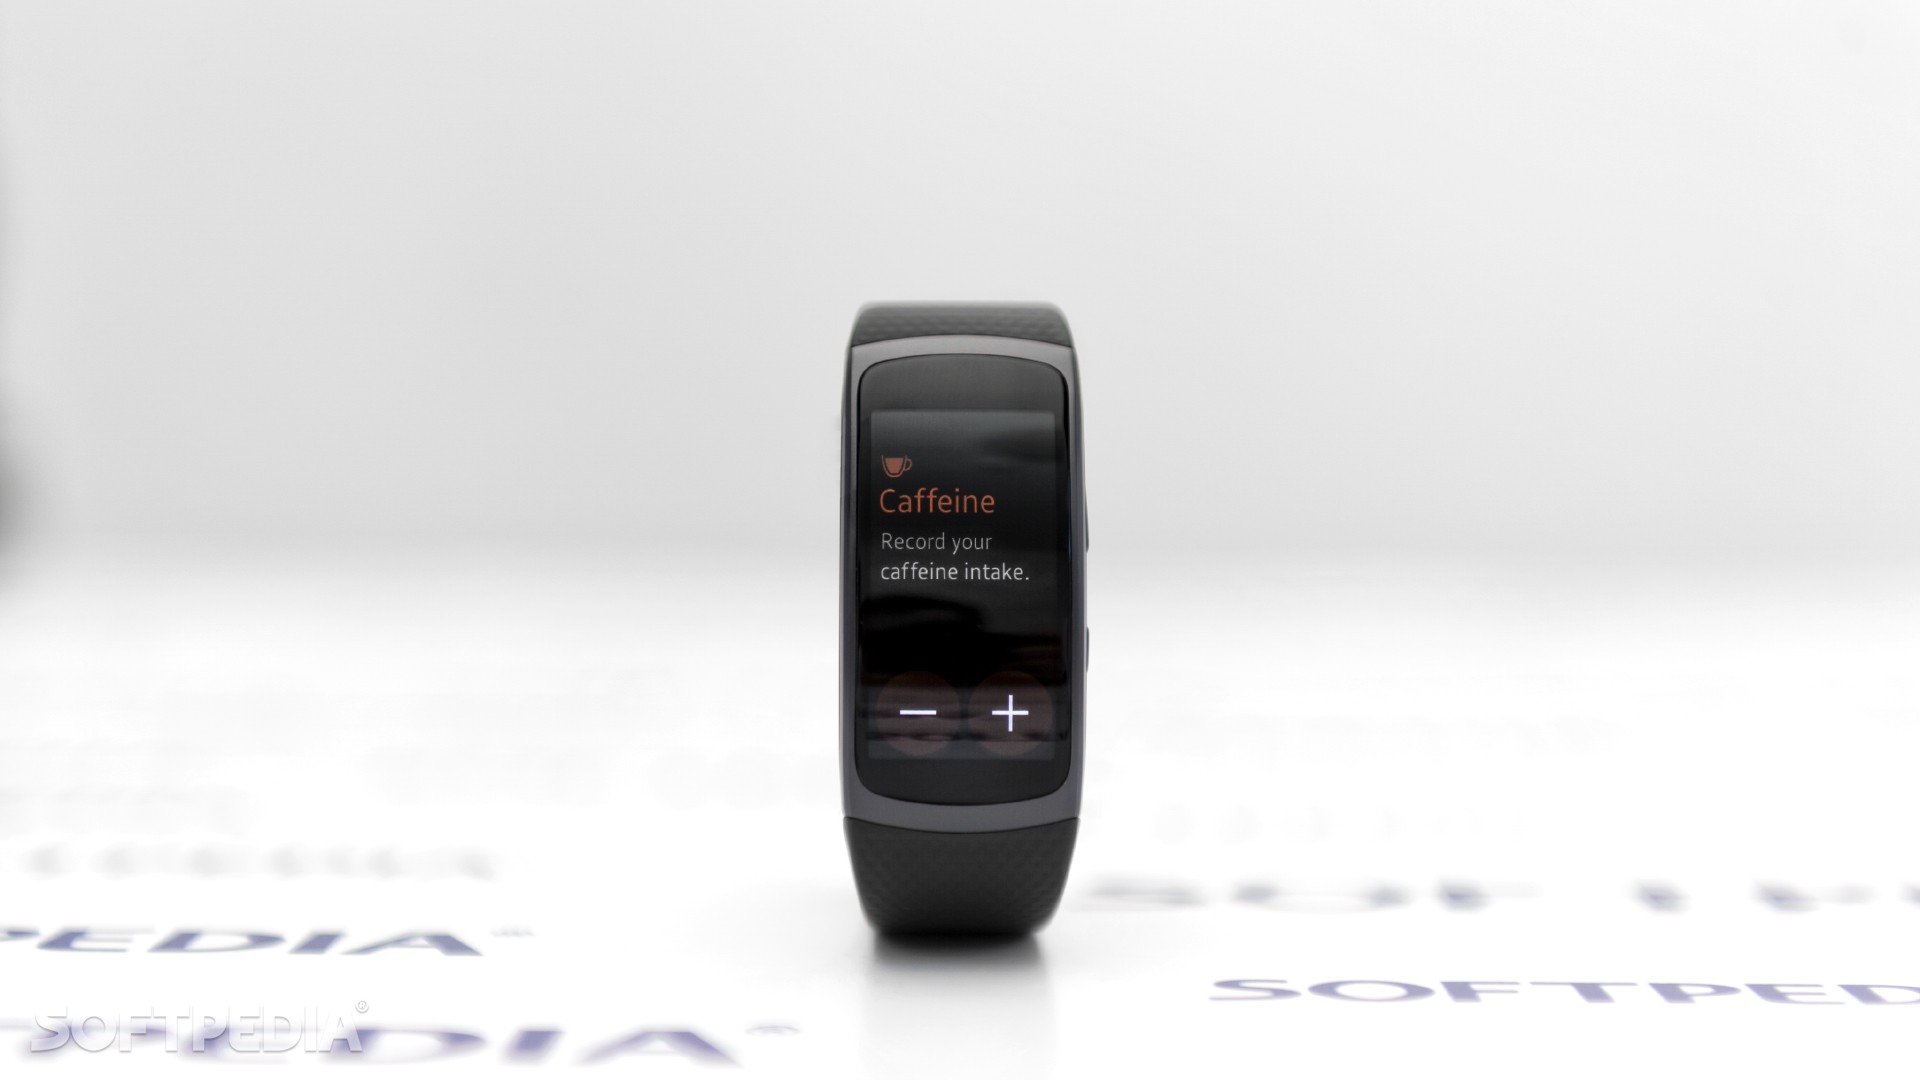 Samsung Gear Fit 2 Caffeine Tracker - Smartphone , HD Wallpaper & Backgrounds